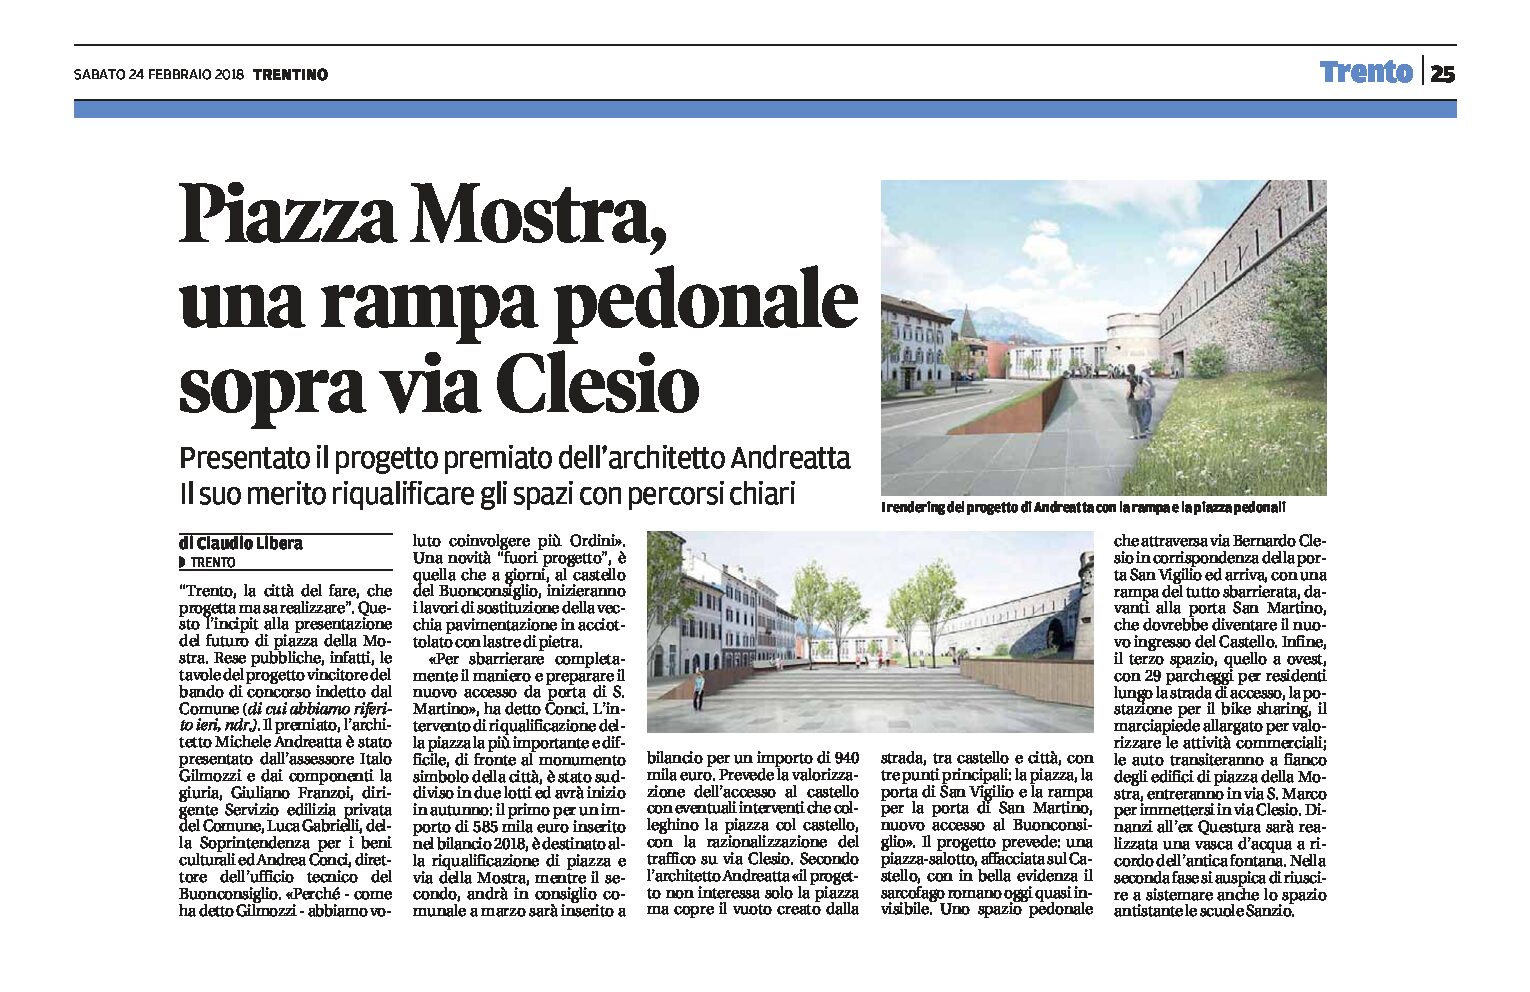 Trento, piazza Mostra: una rampa pedonale sopra via Clesio